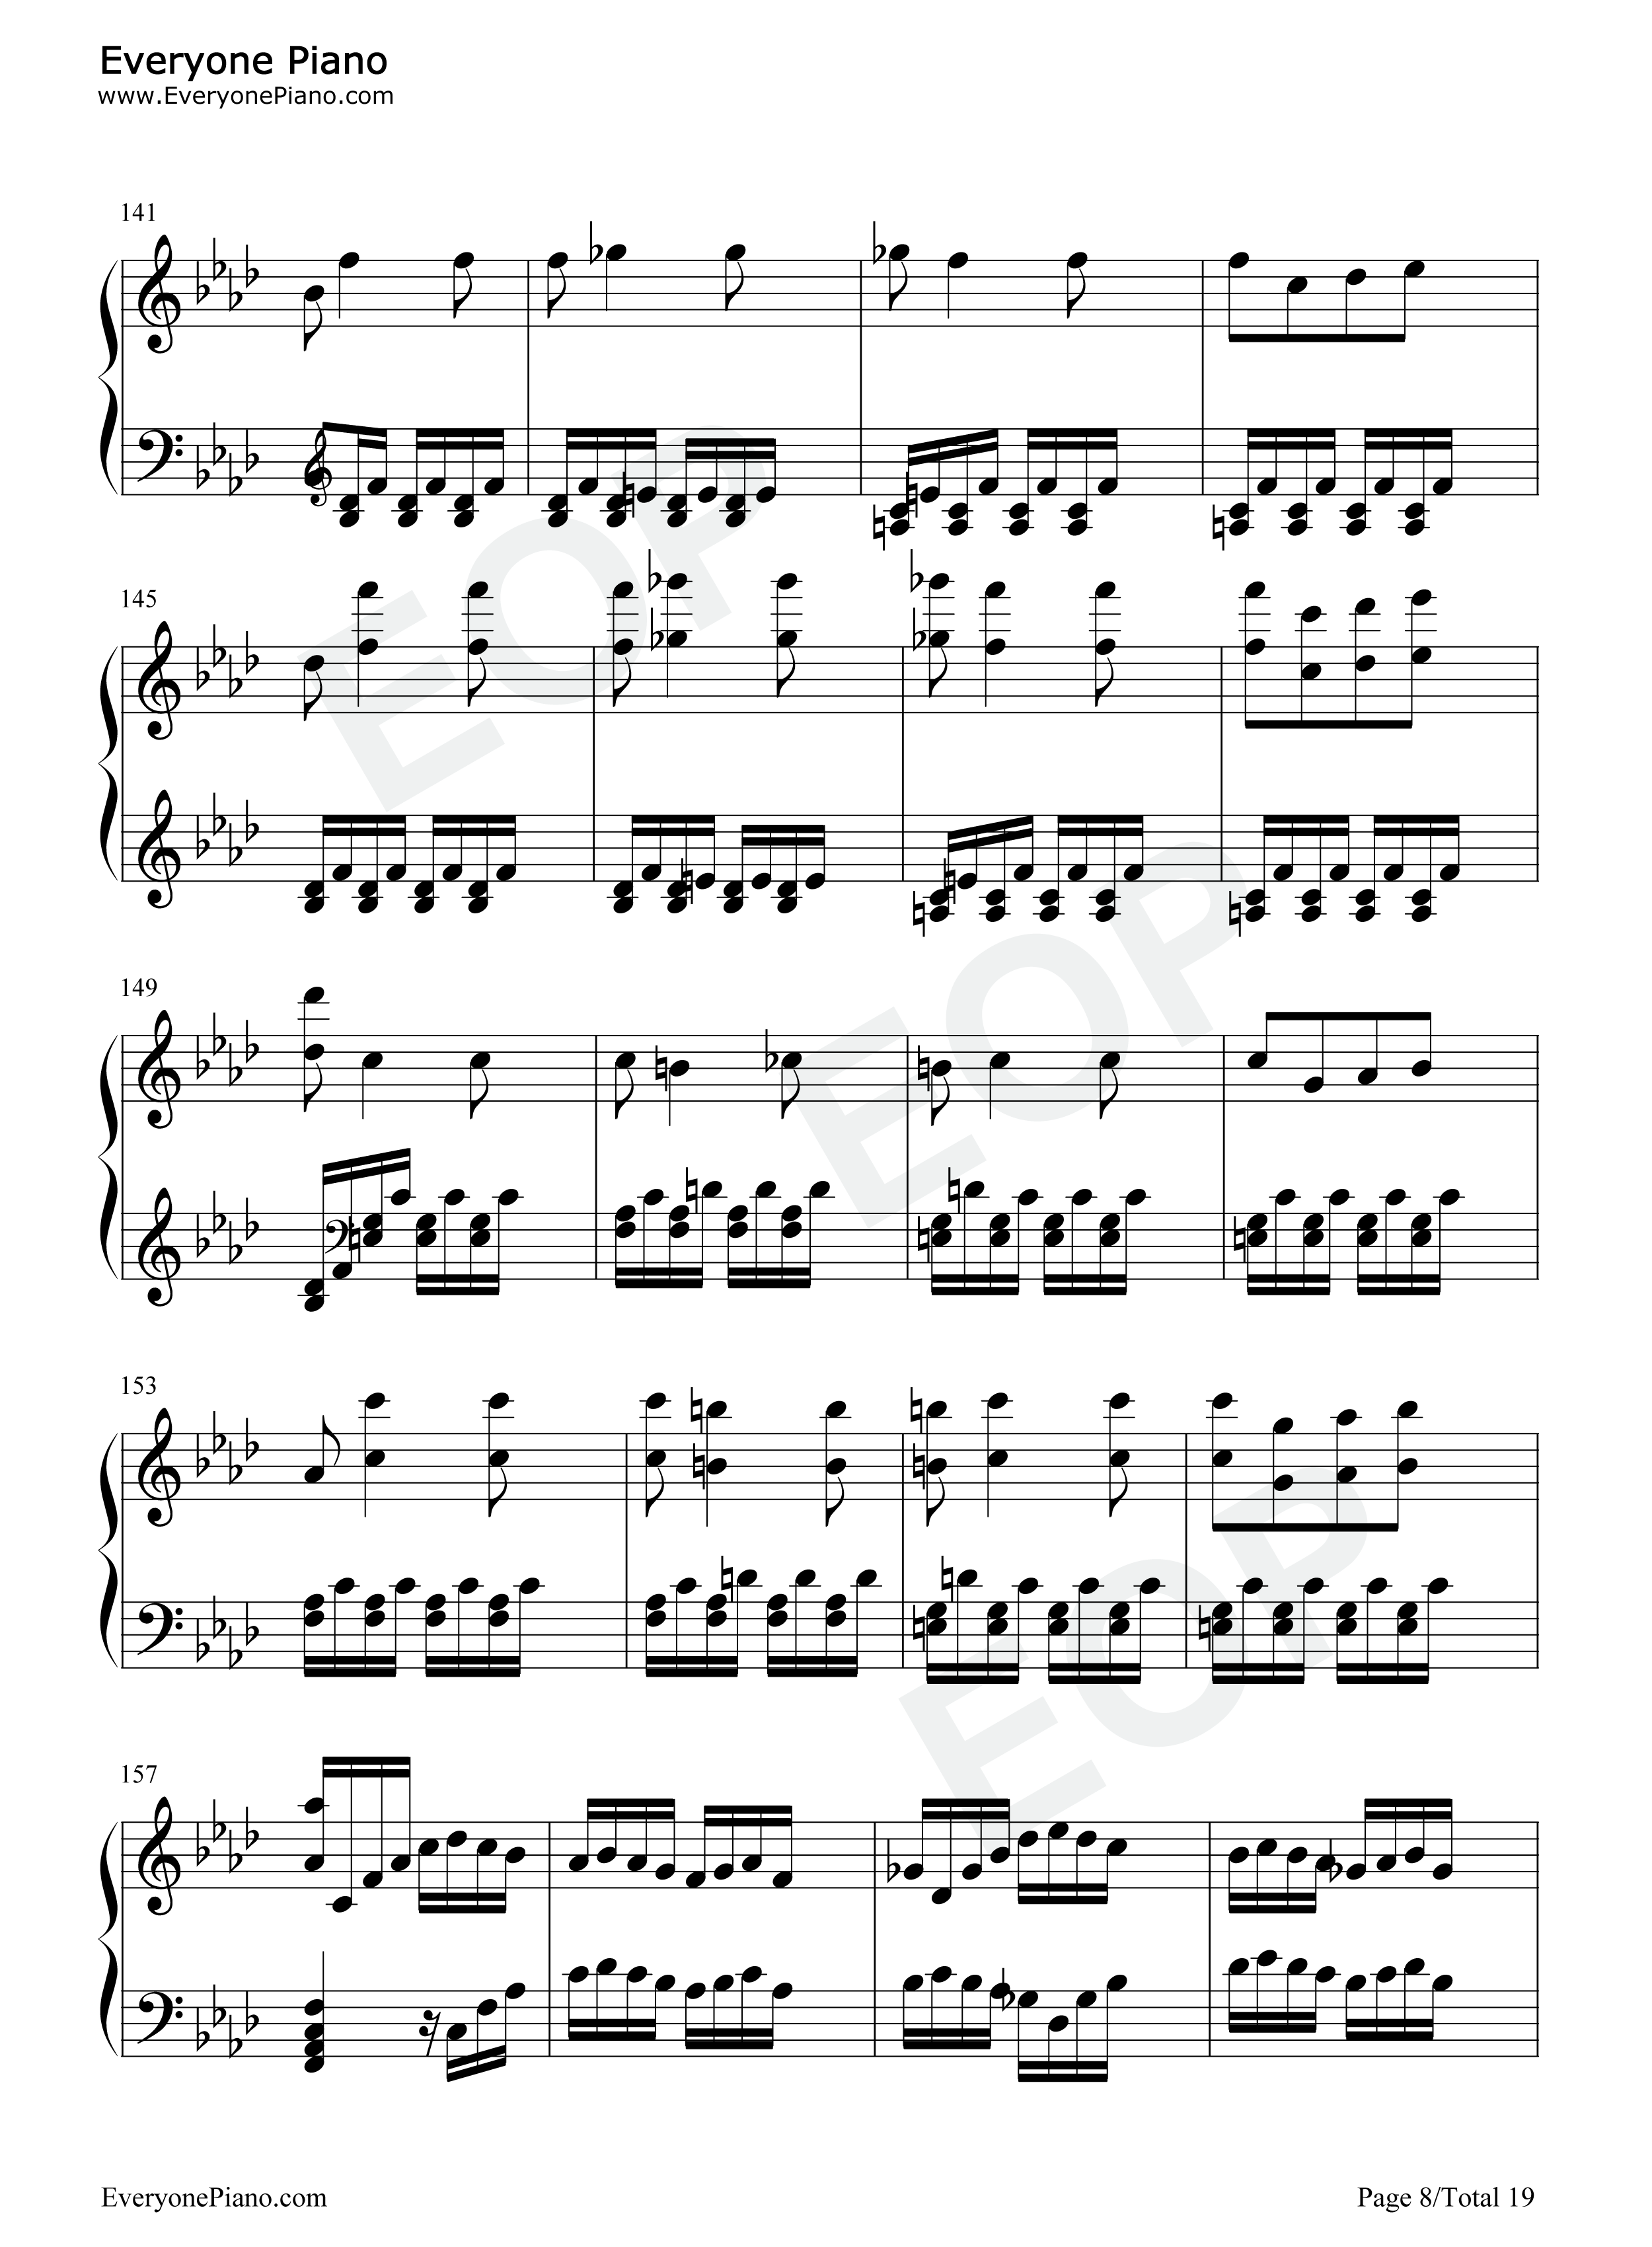 热情奏鸣曲第3乐章-第23钢琴奏鸣曲-贝多芬五线谱预览8